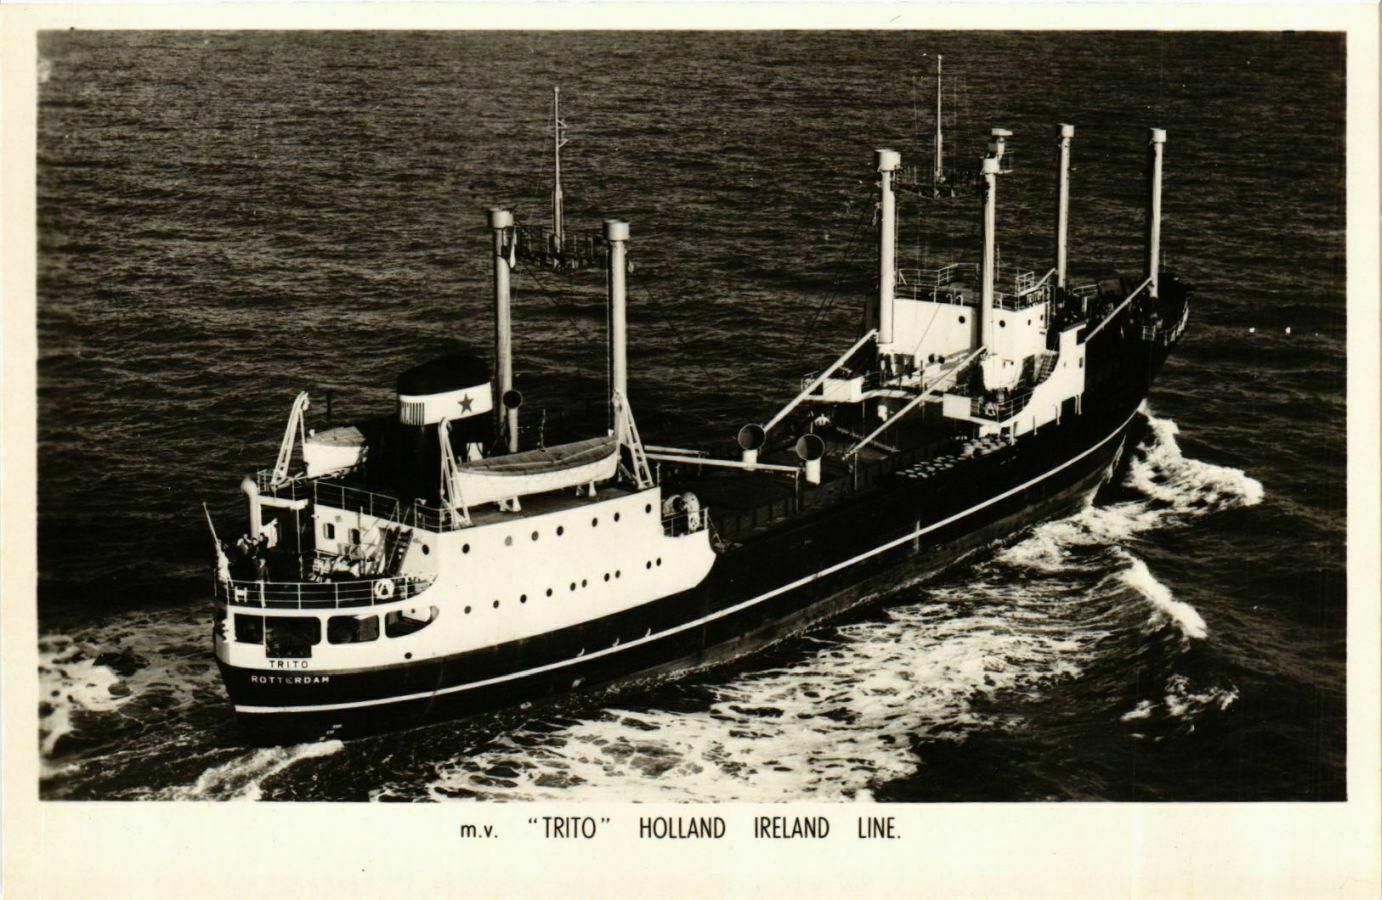 CPA AK m.v. Trito - Holland Ireland Line SHIPS (911477)